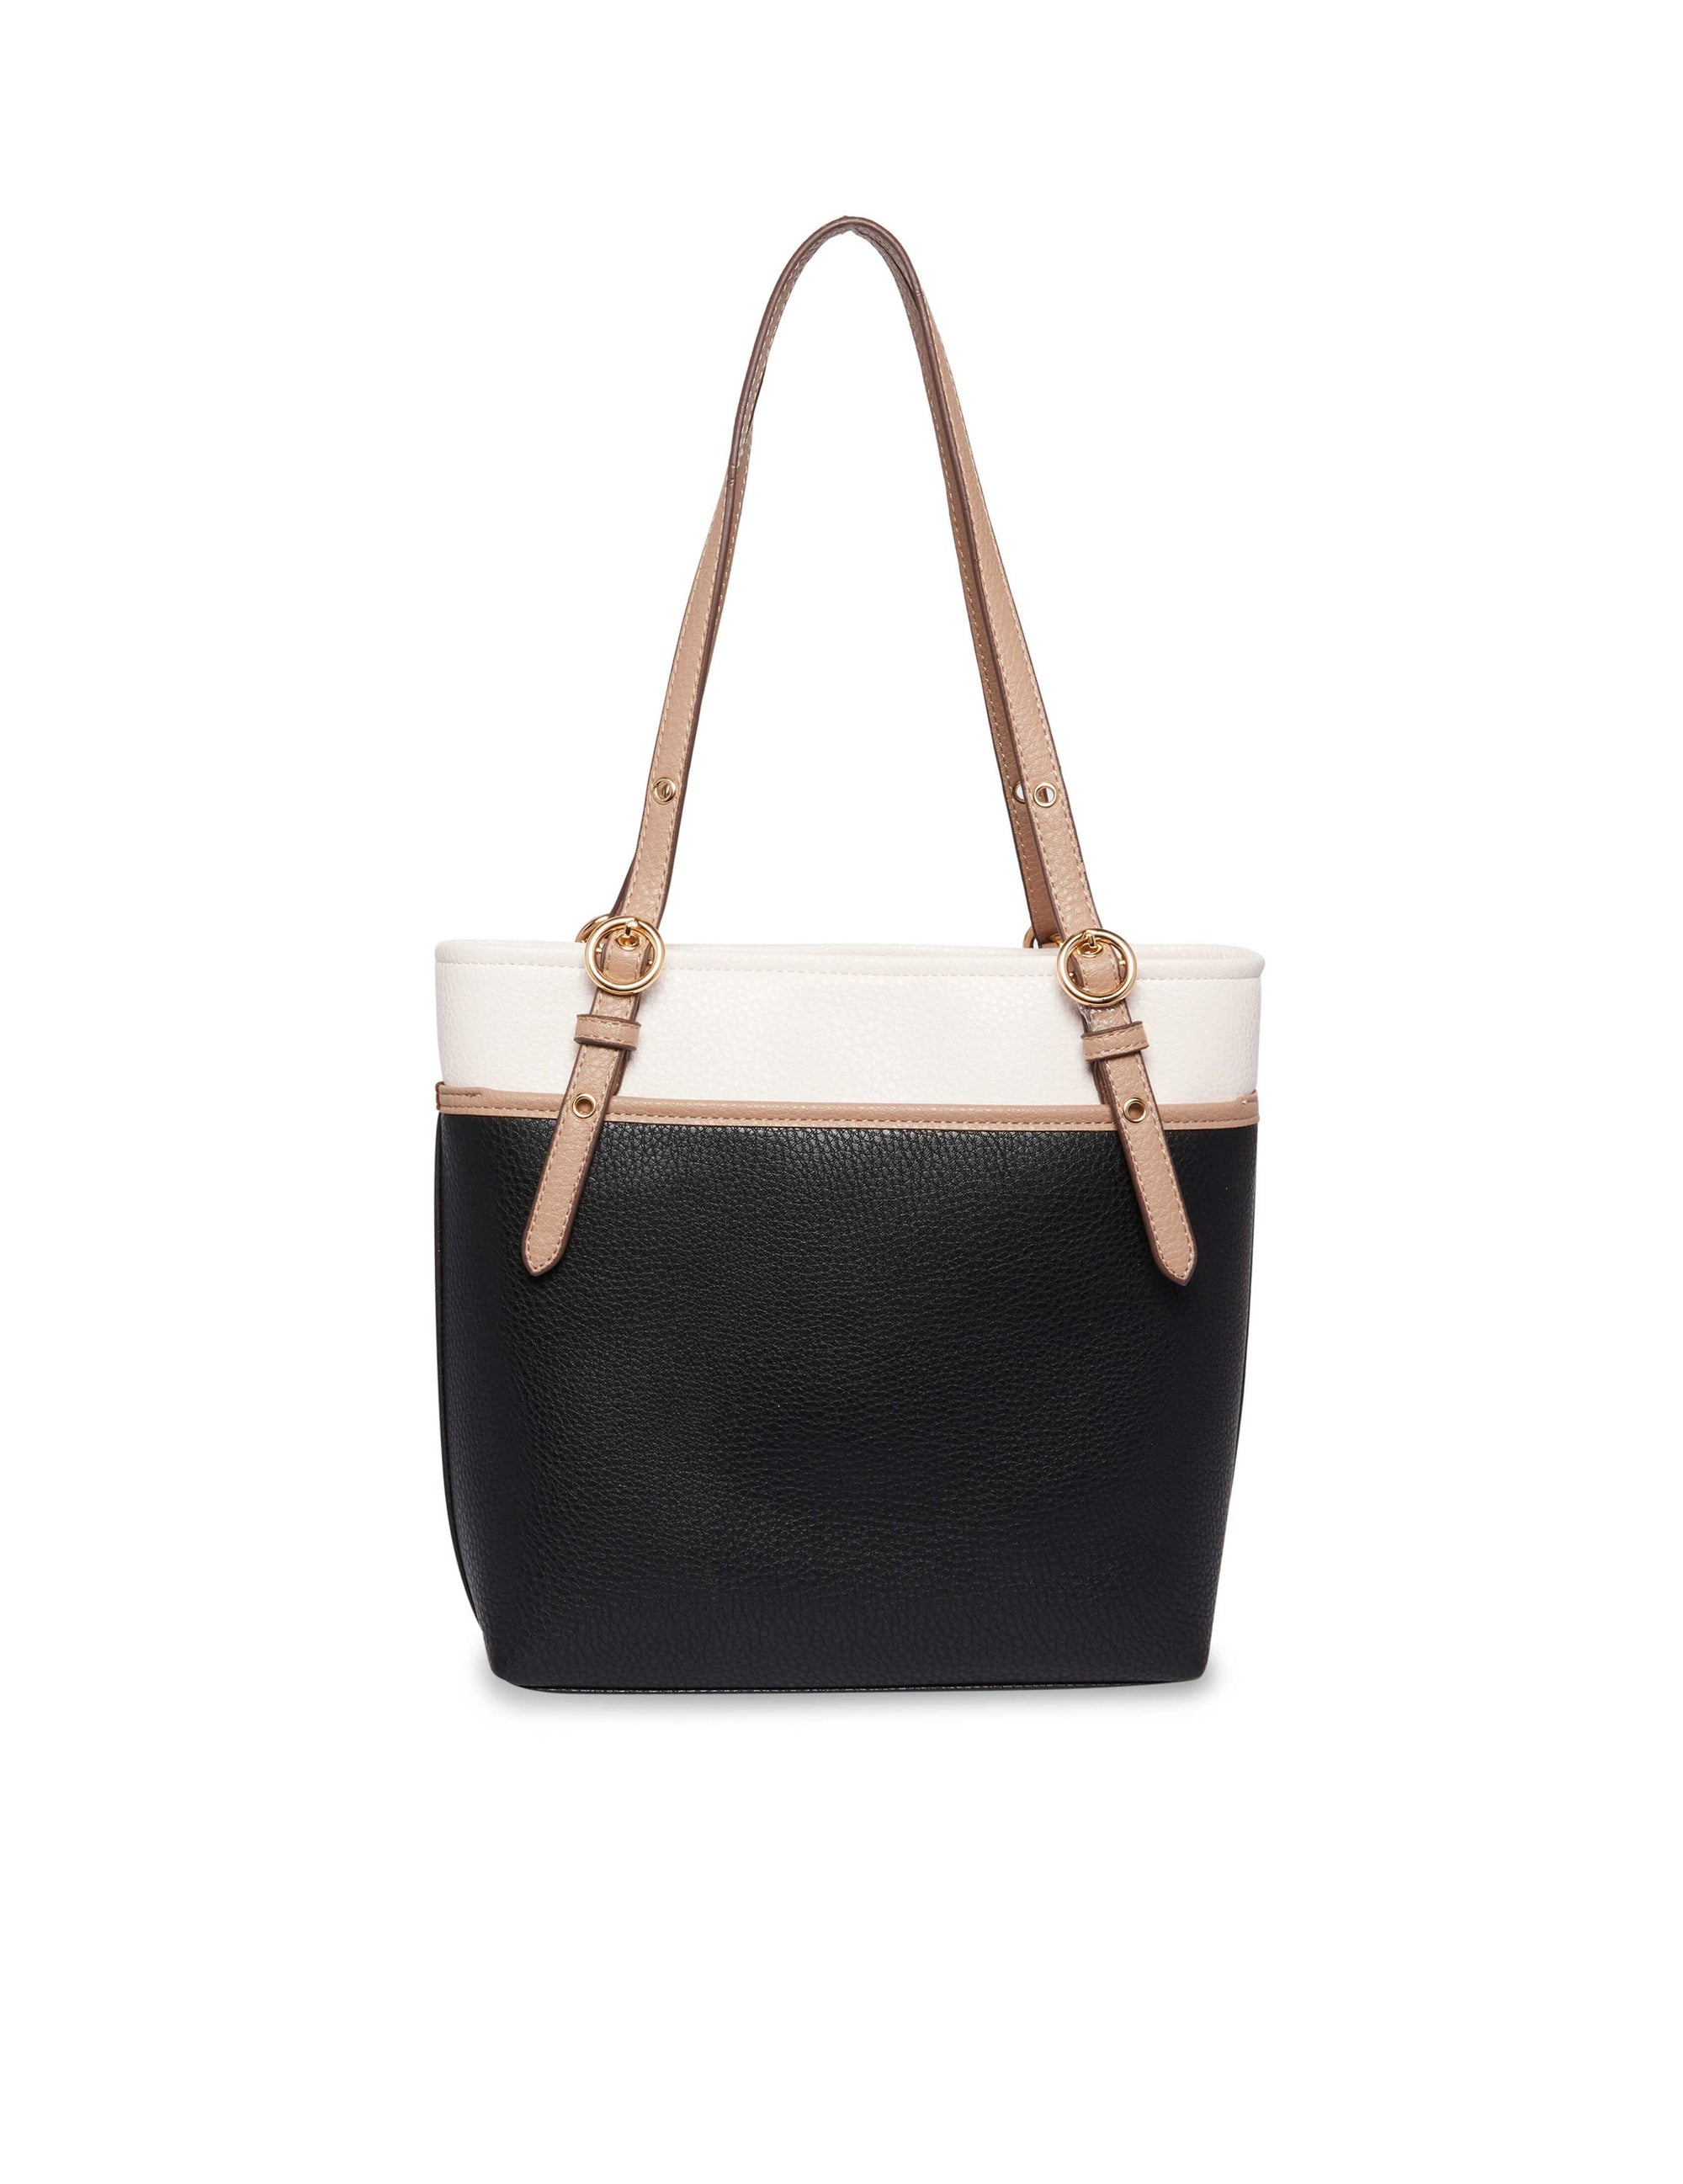 Anne Klein | Bags | Great Looking Coral Anne Klein Handbag | Poshmark